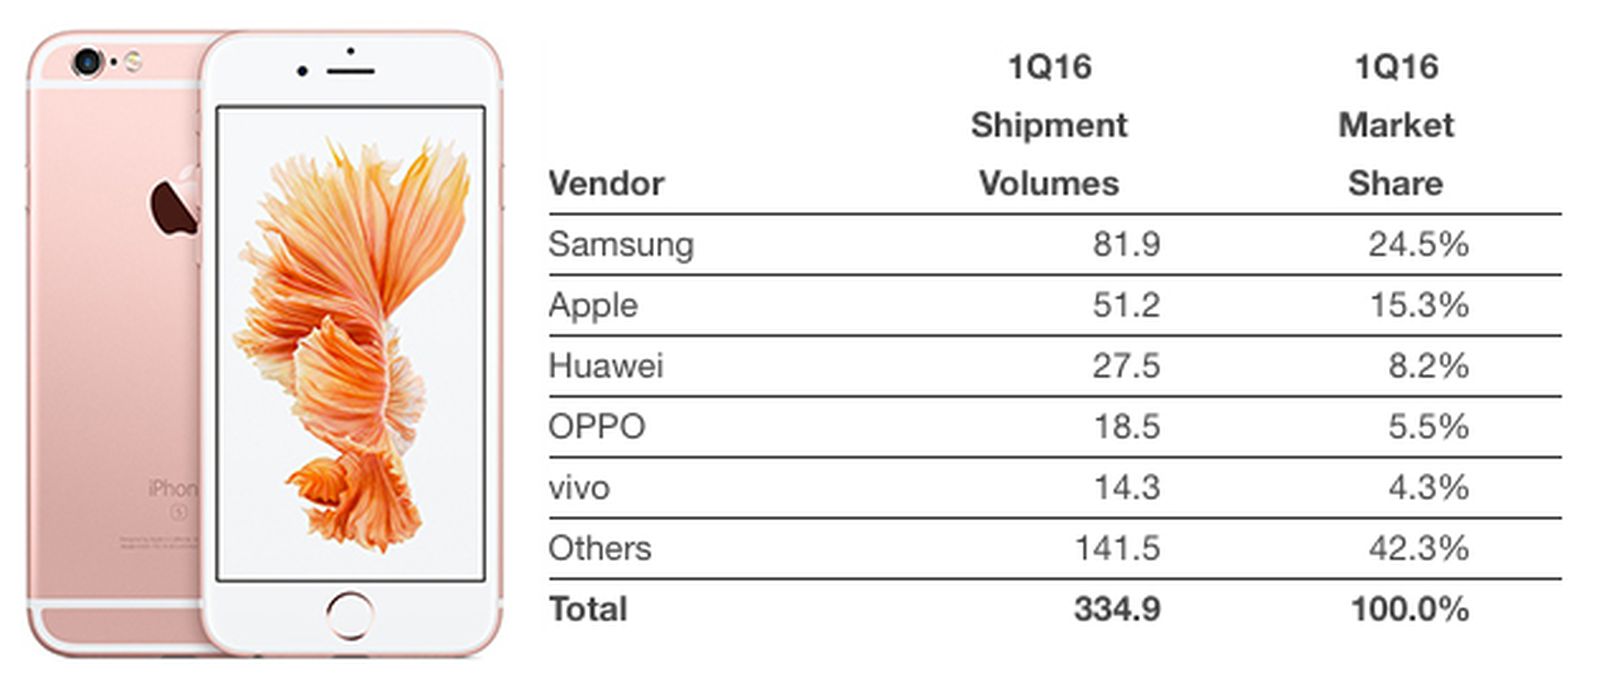 Сравнение айфон и хуавей. Iphone Market. Apple vivo Oppo Huawei. Сравнение ноутбуков Эппл и Хуавей. Экспертная оценка эпл Хуавей самсунг.